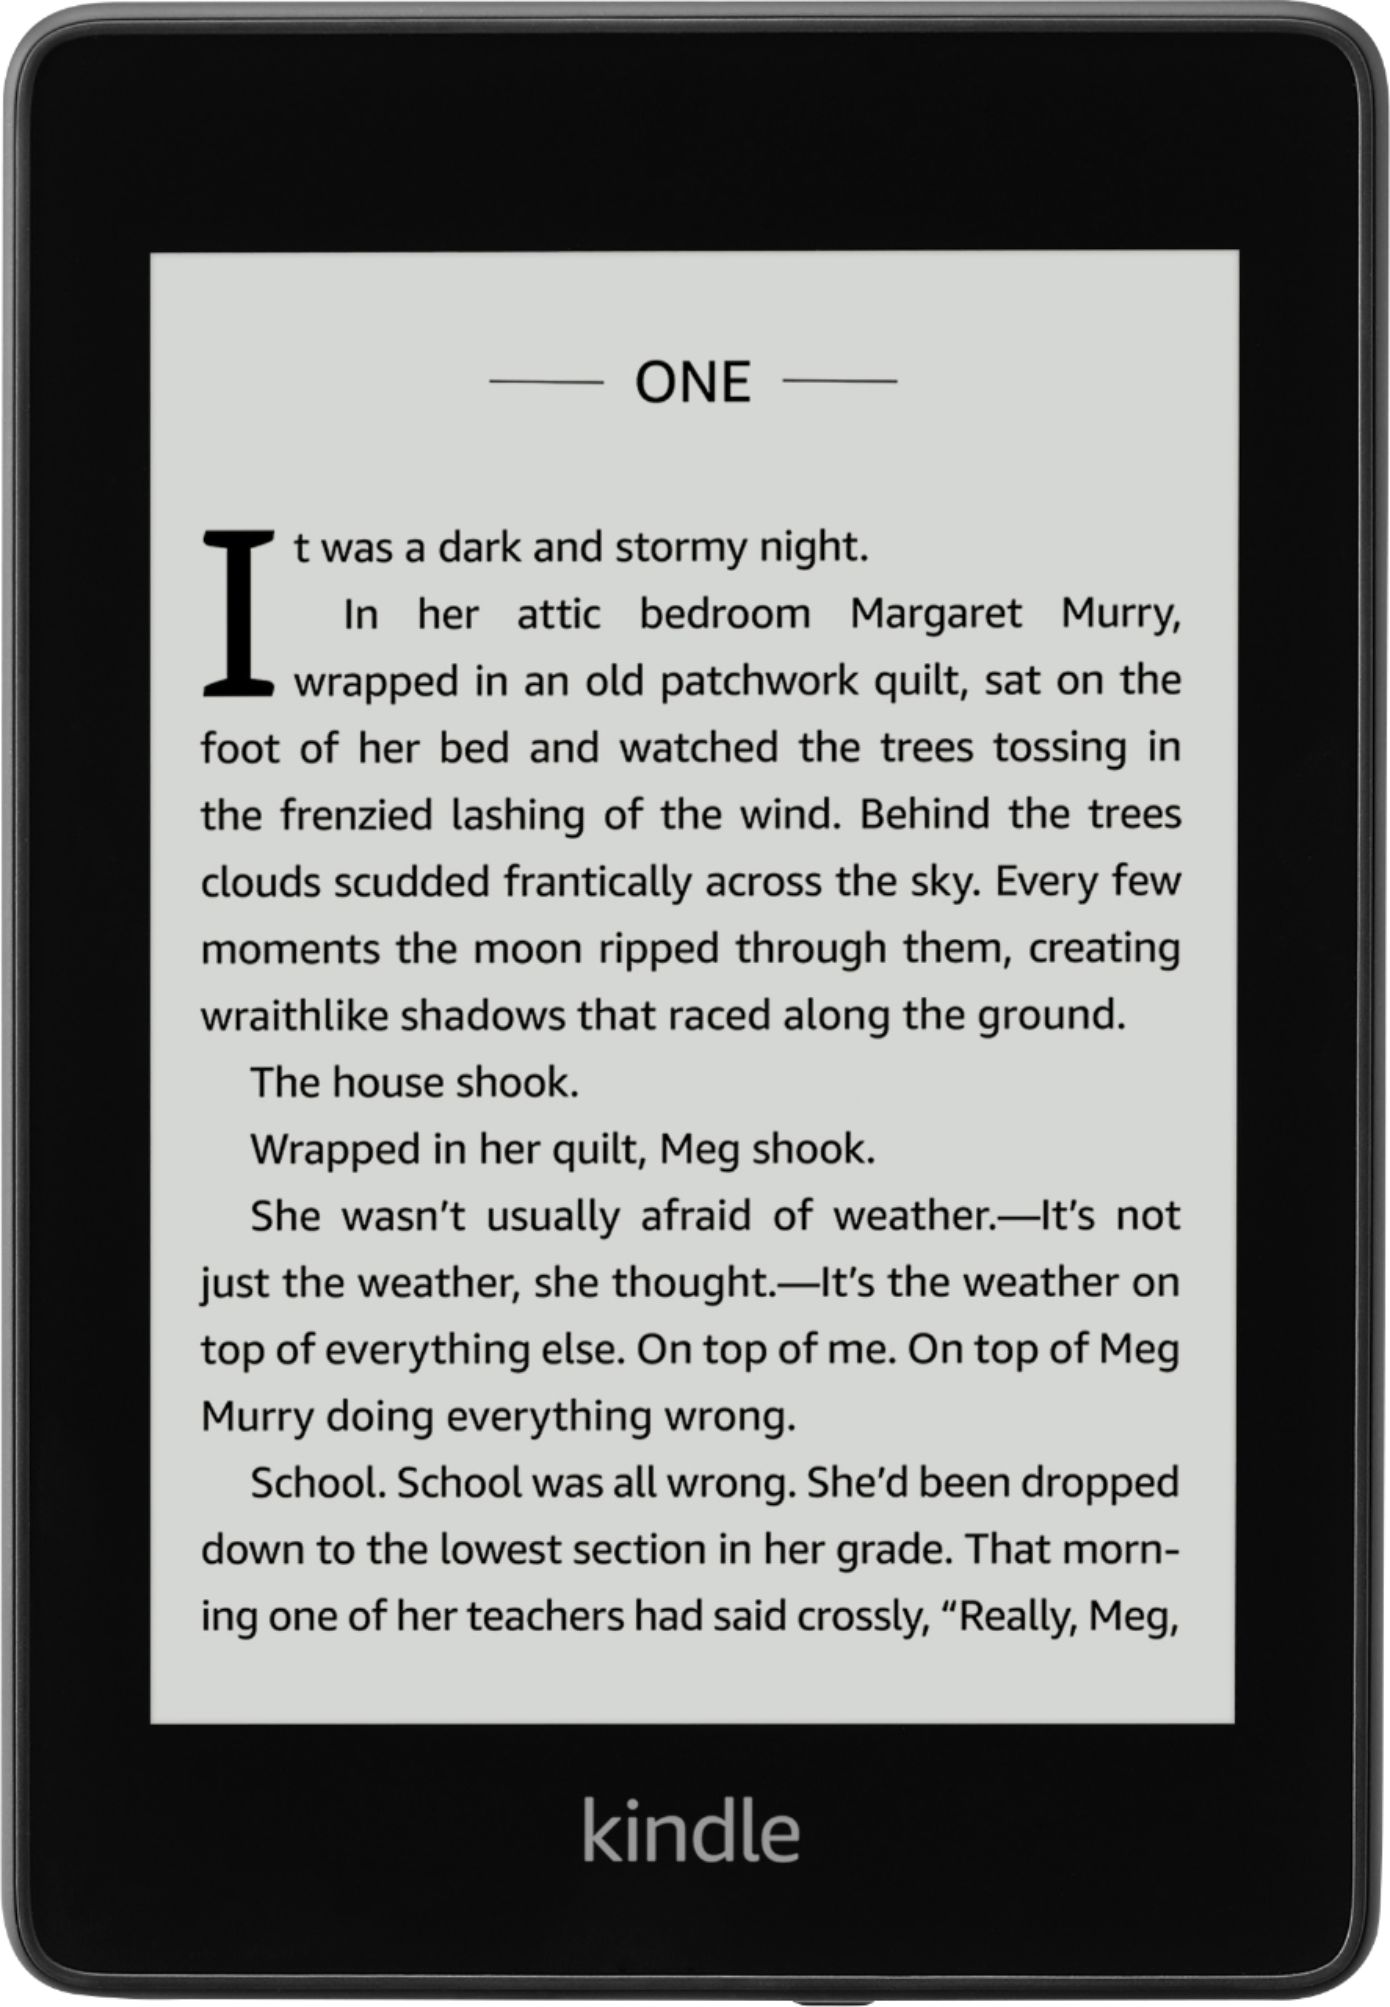 Amazon PQ948KJ Paperwhite E-Reader là sự lựa chọn hoàn hảo cho những người yêu sách và công nghệ. Với màn hình hiển thị ánh sáng đèn nền chính xác, văn bản đẹp và không bị chói sáng, cộng với thiết kế nhỏ gọn và tiện dụng, thiết bị này sẽ làm cho trải nghiệm đọc sách của bạn trở nên thú vị hơn bao giờ hết.